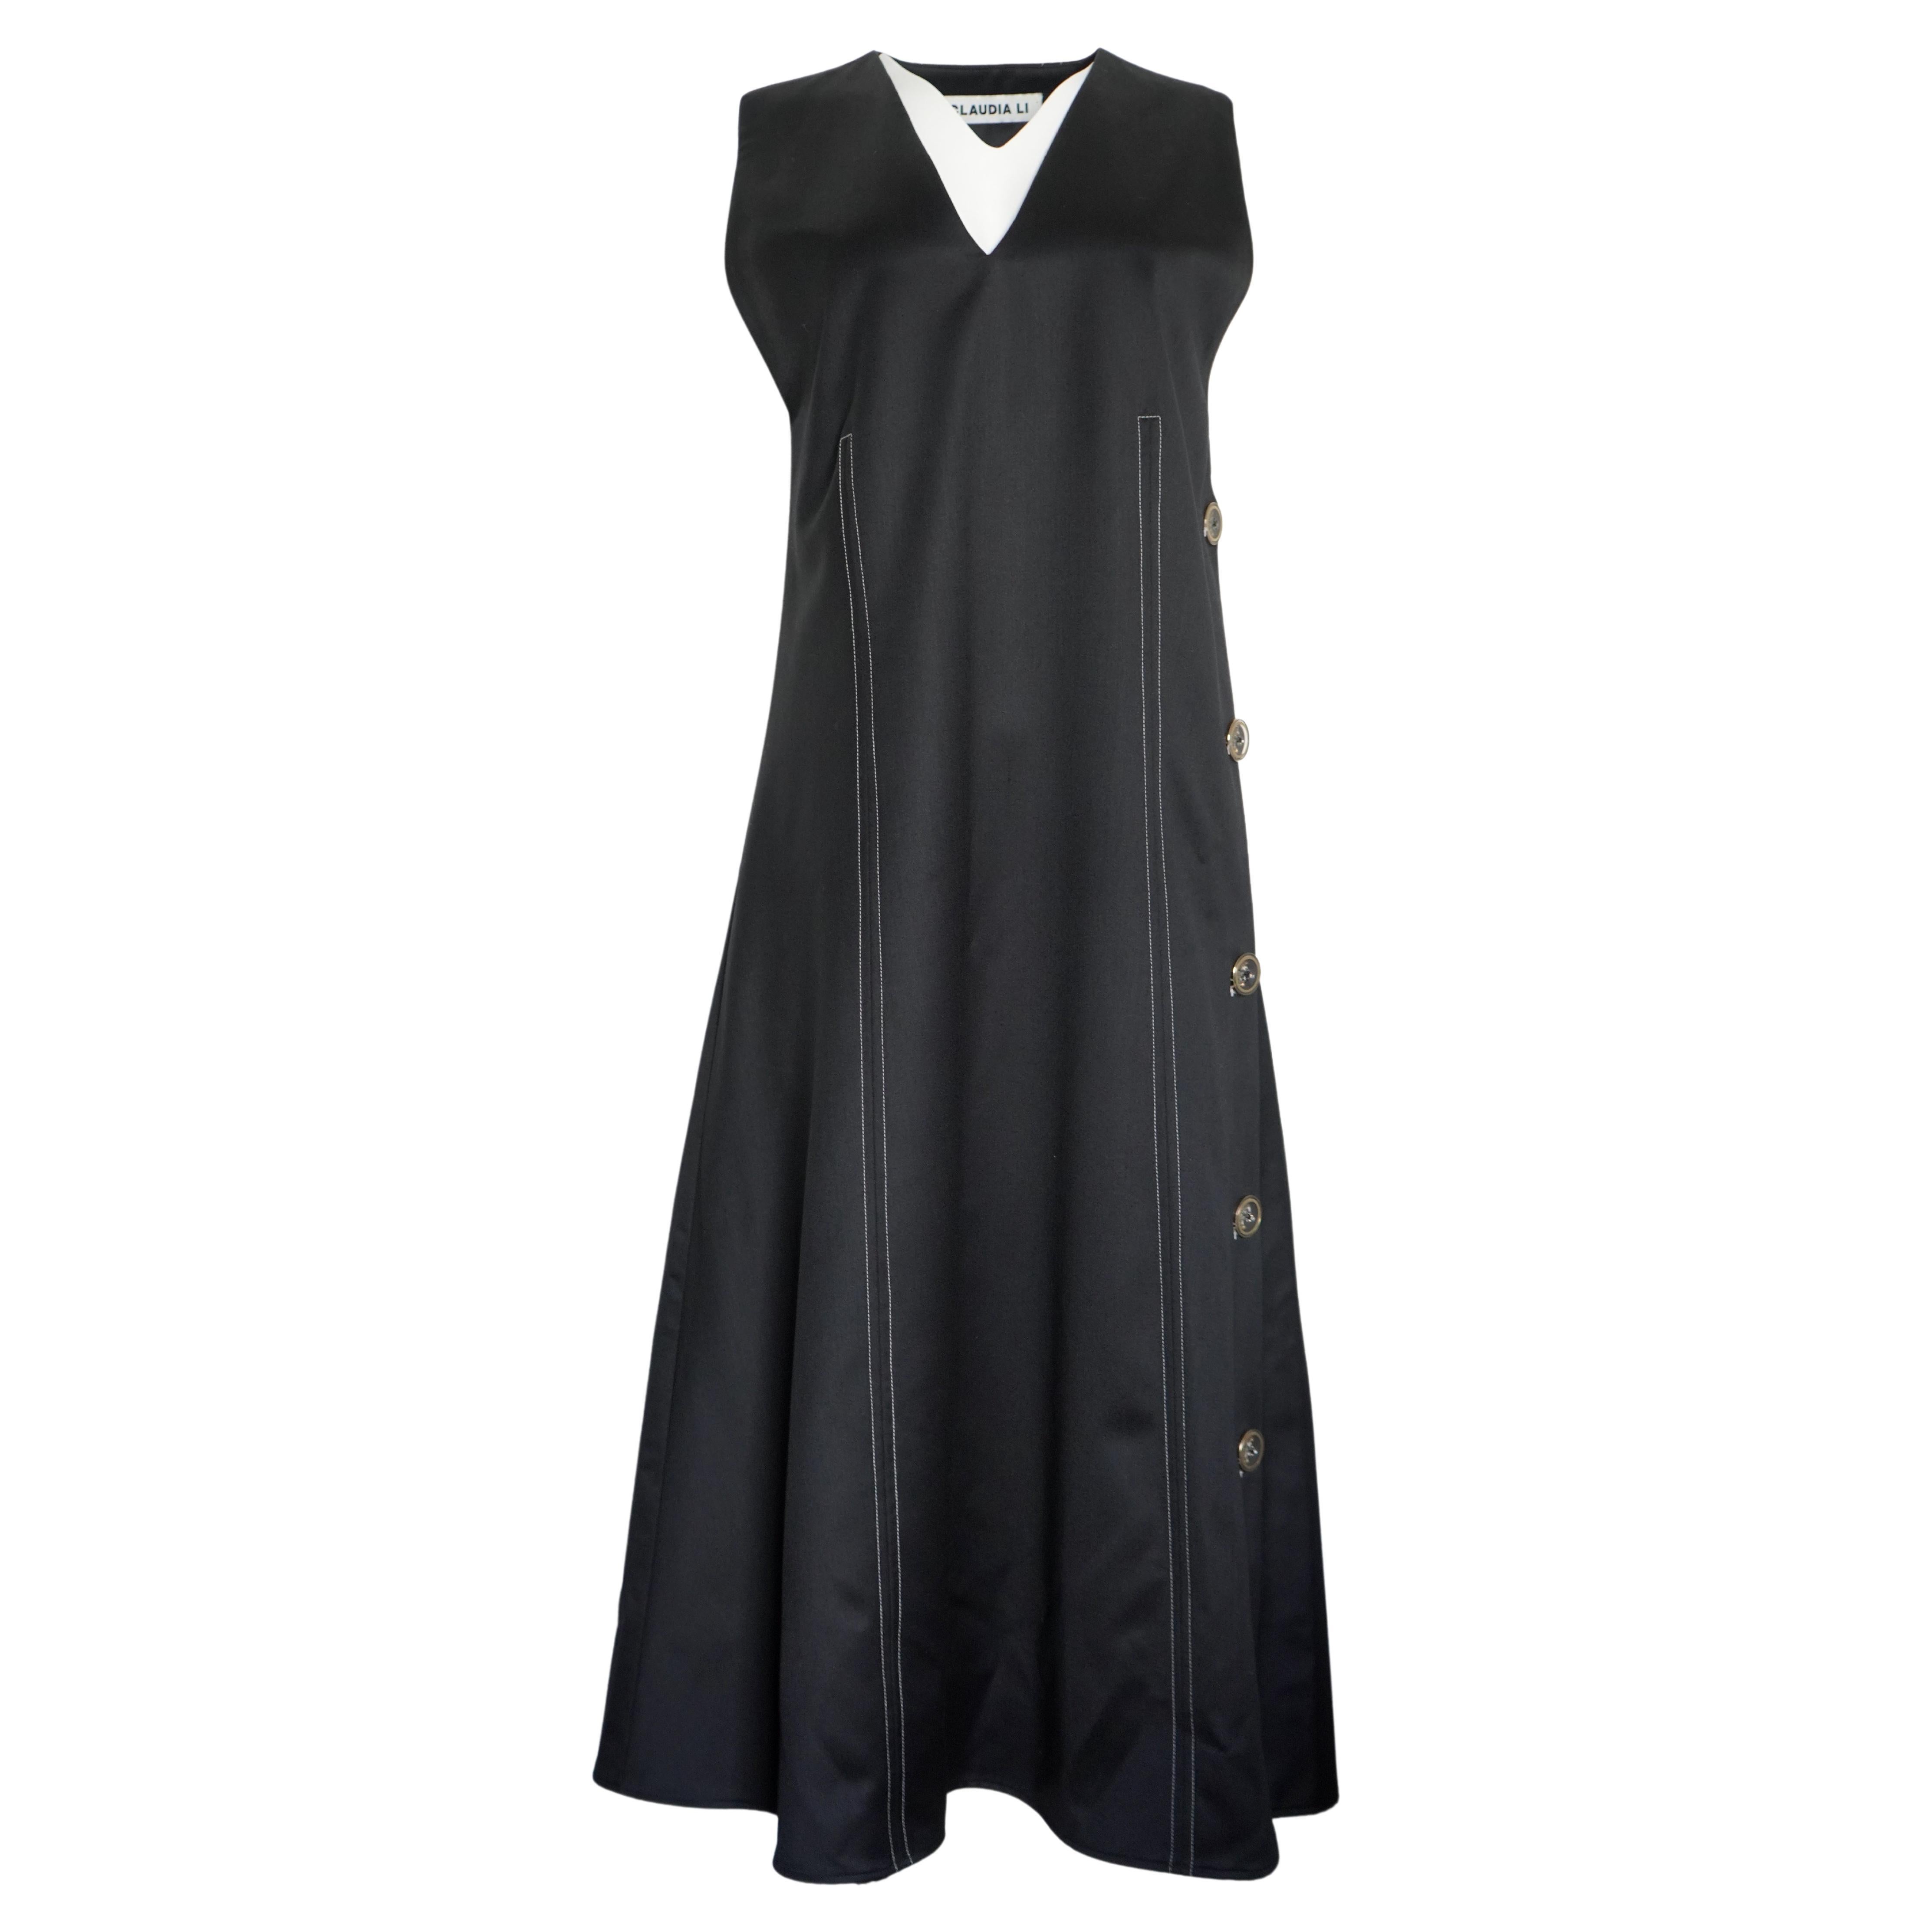 Claudia Li Black Wool Sleeveless Midi dress, Size 4